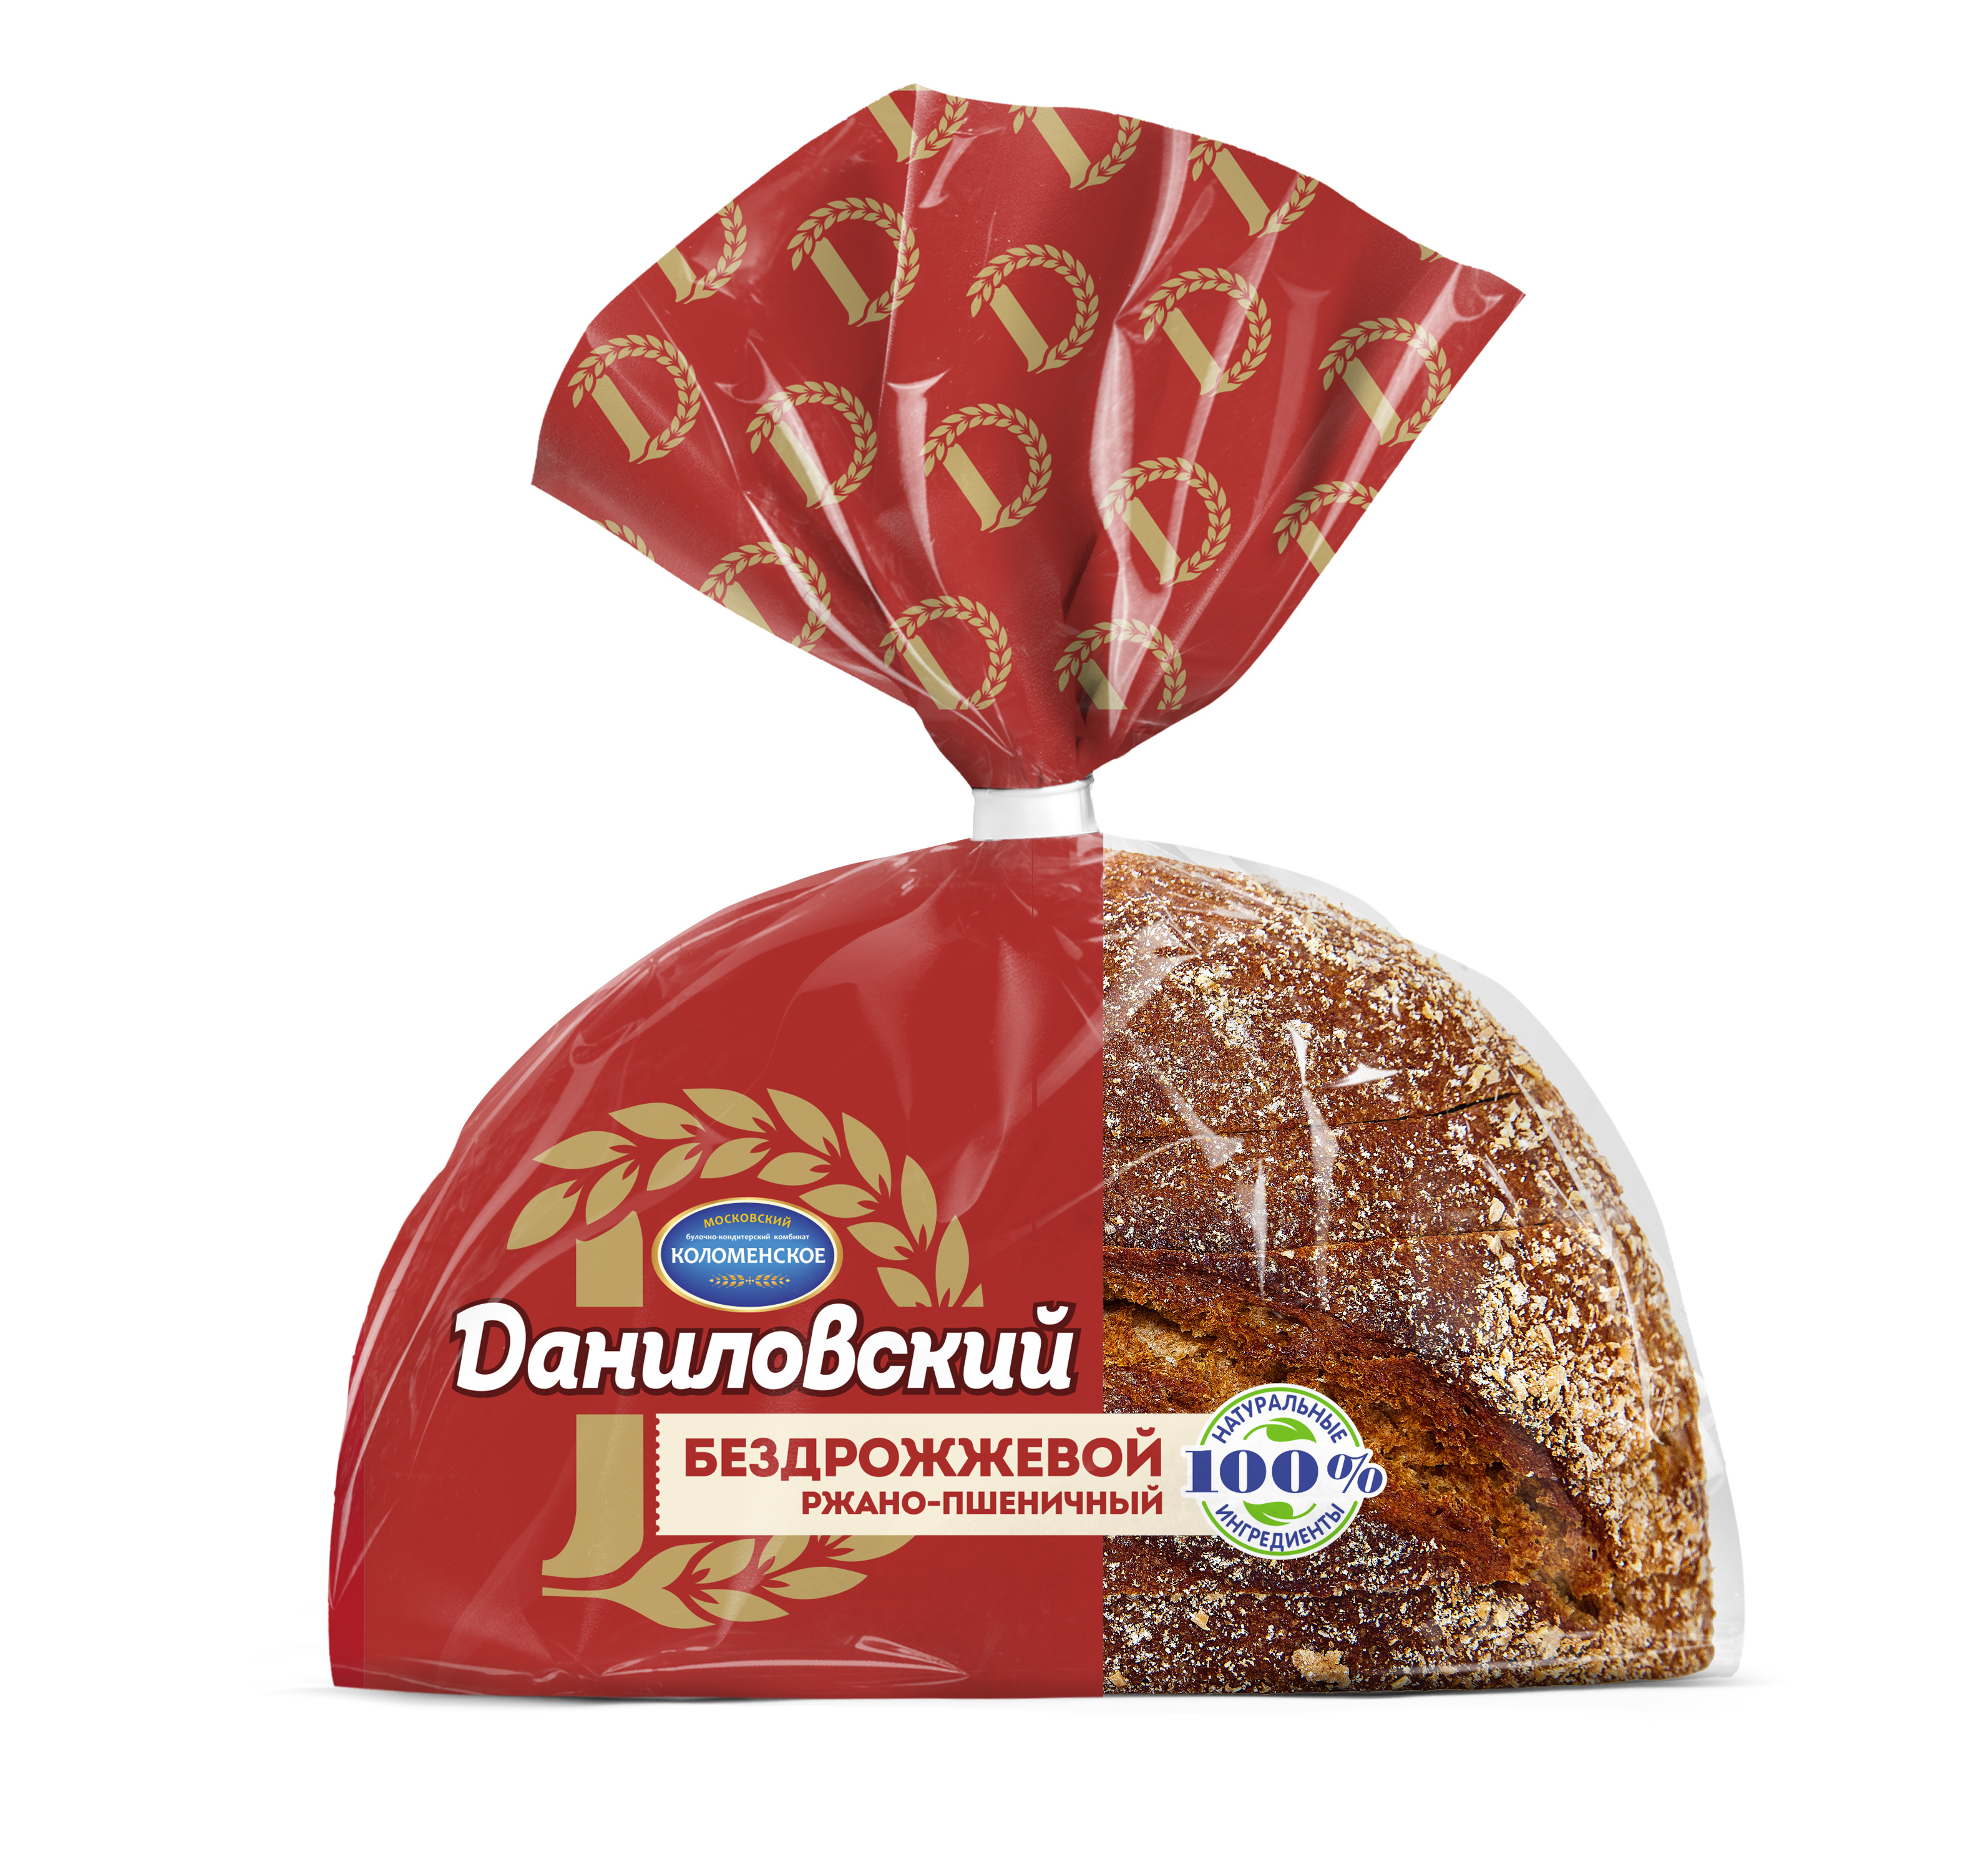 Хлеб Коломенское Даниловский 300г